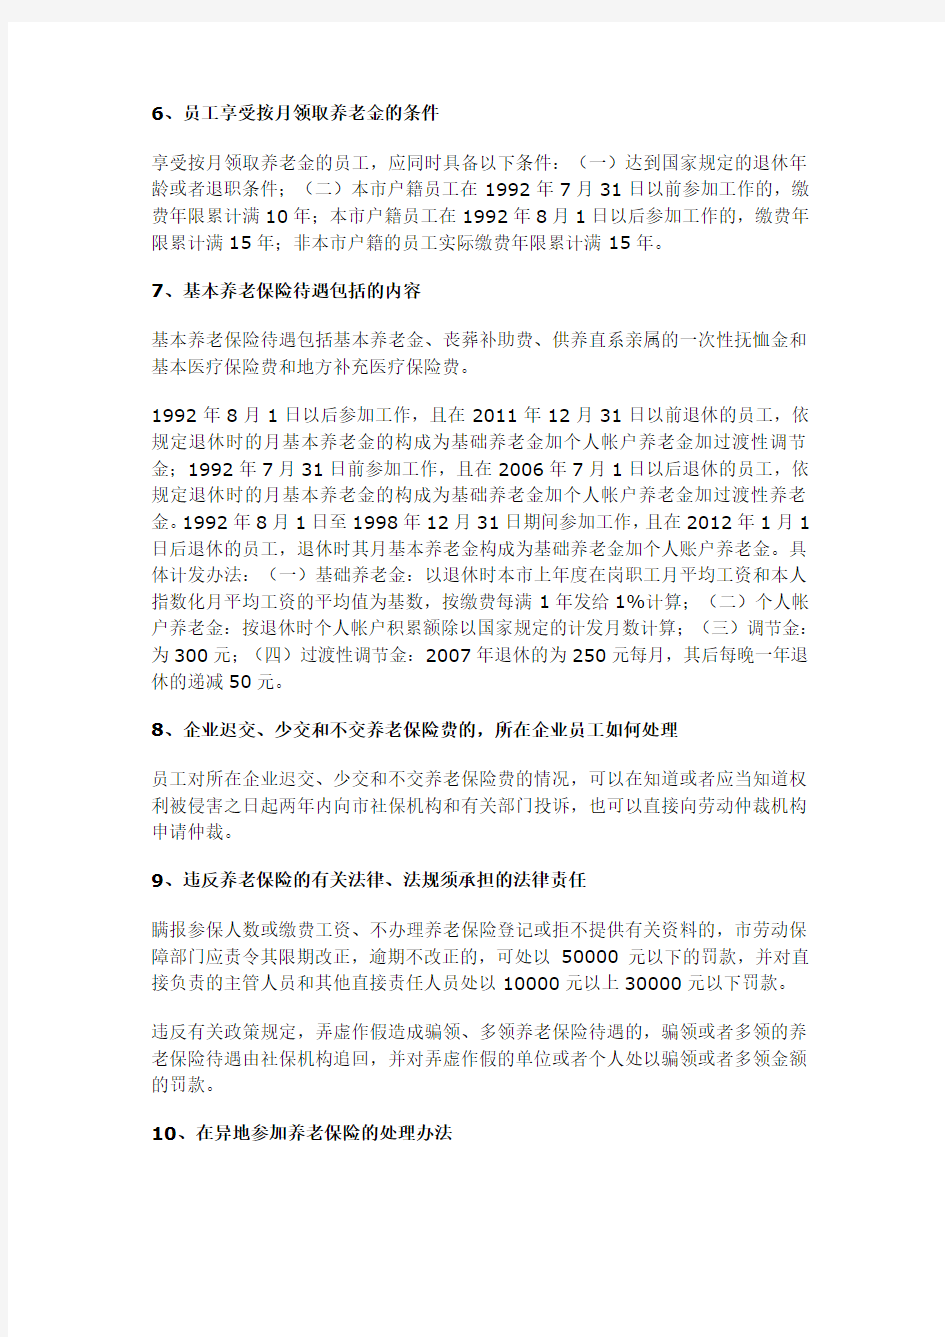 深圳市社会保险政策法规问答